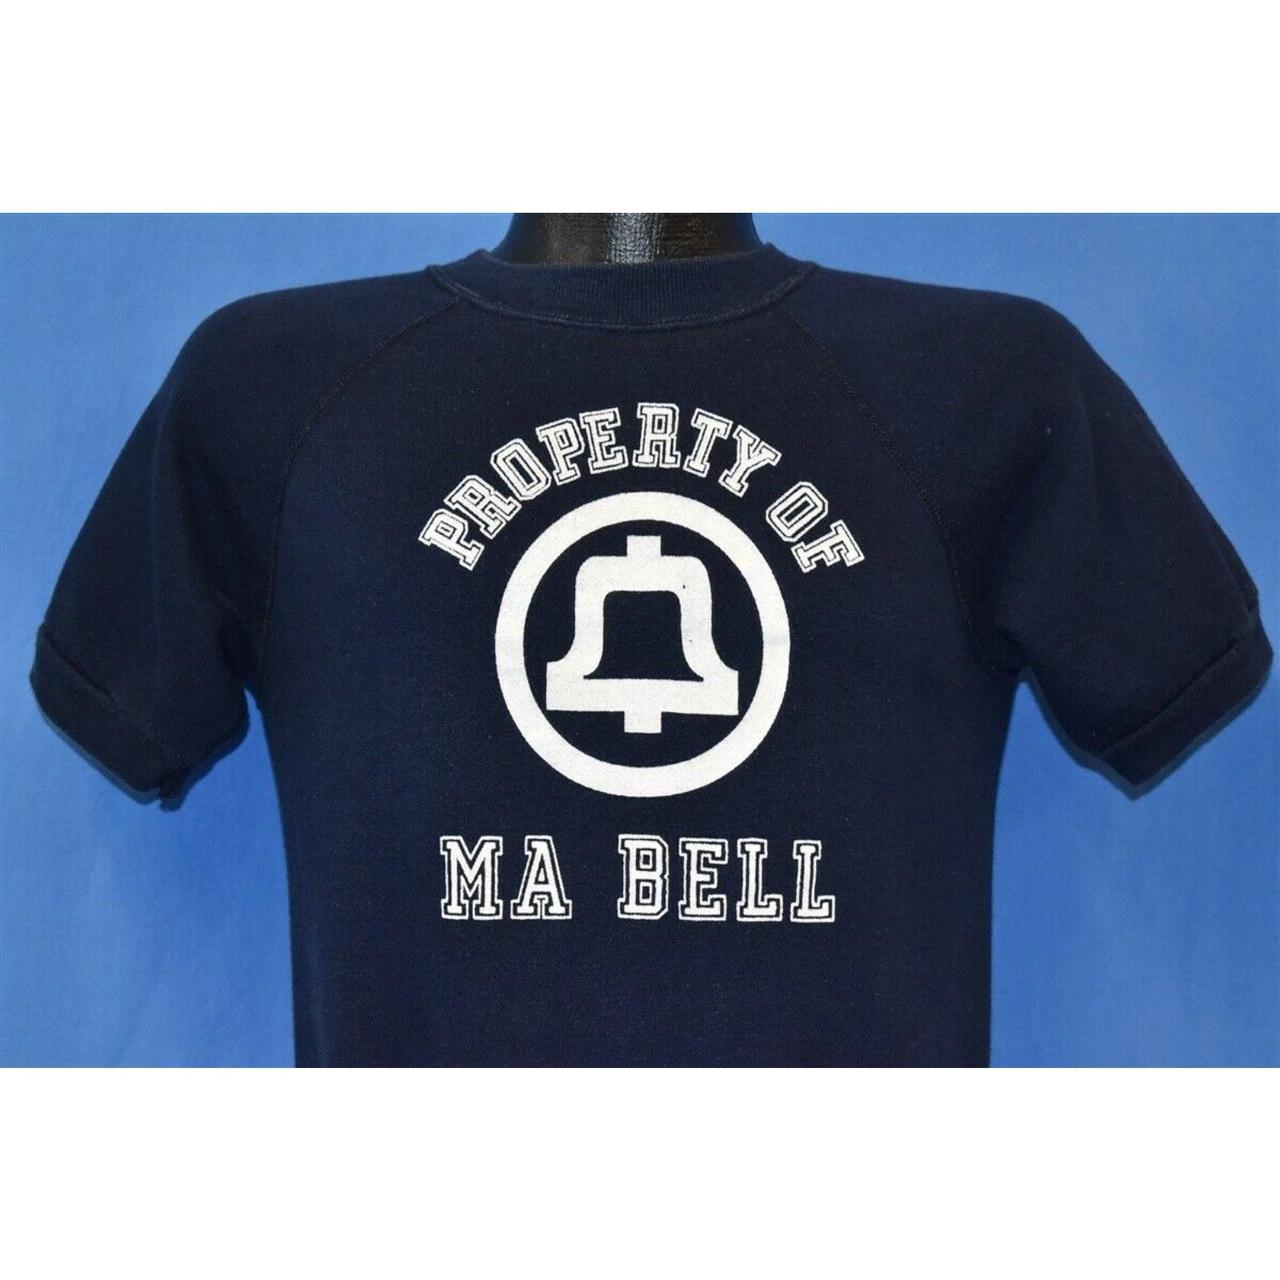 Bell Men's Sweatshirt